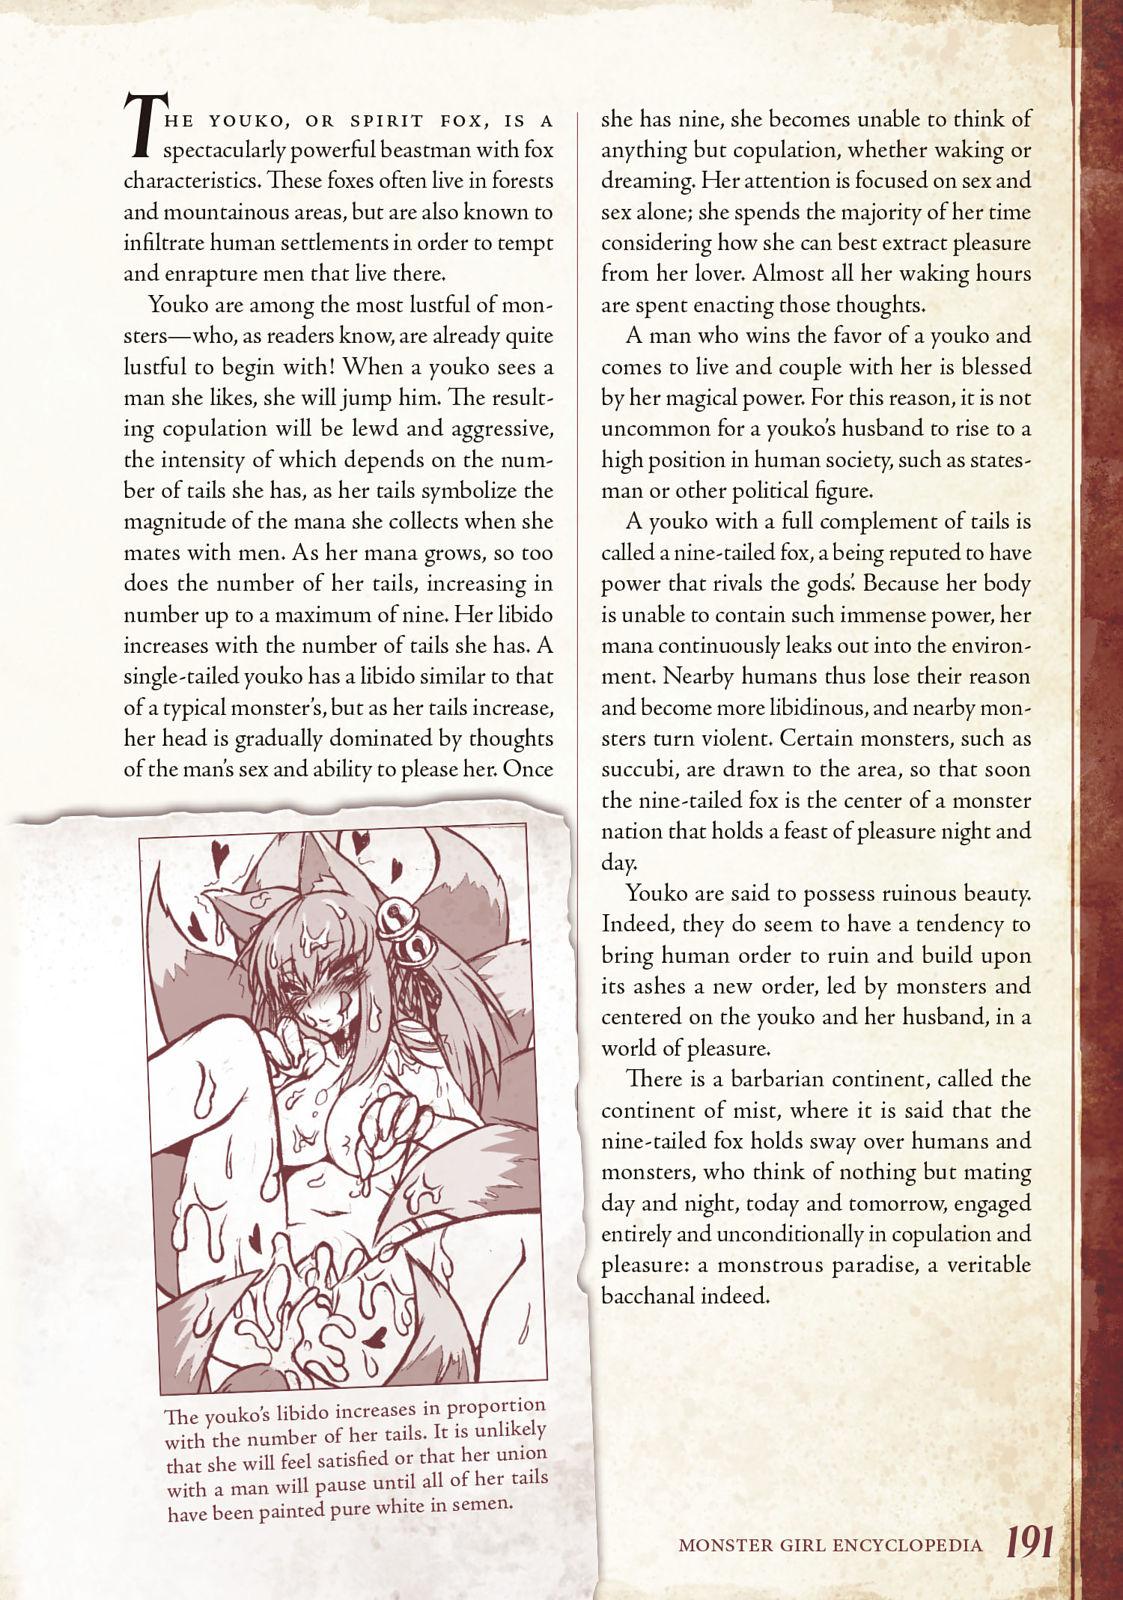 Monster Girl Encyclopedia Vol. 1 191